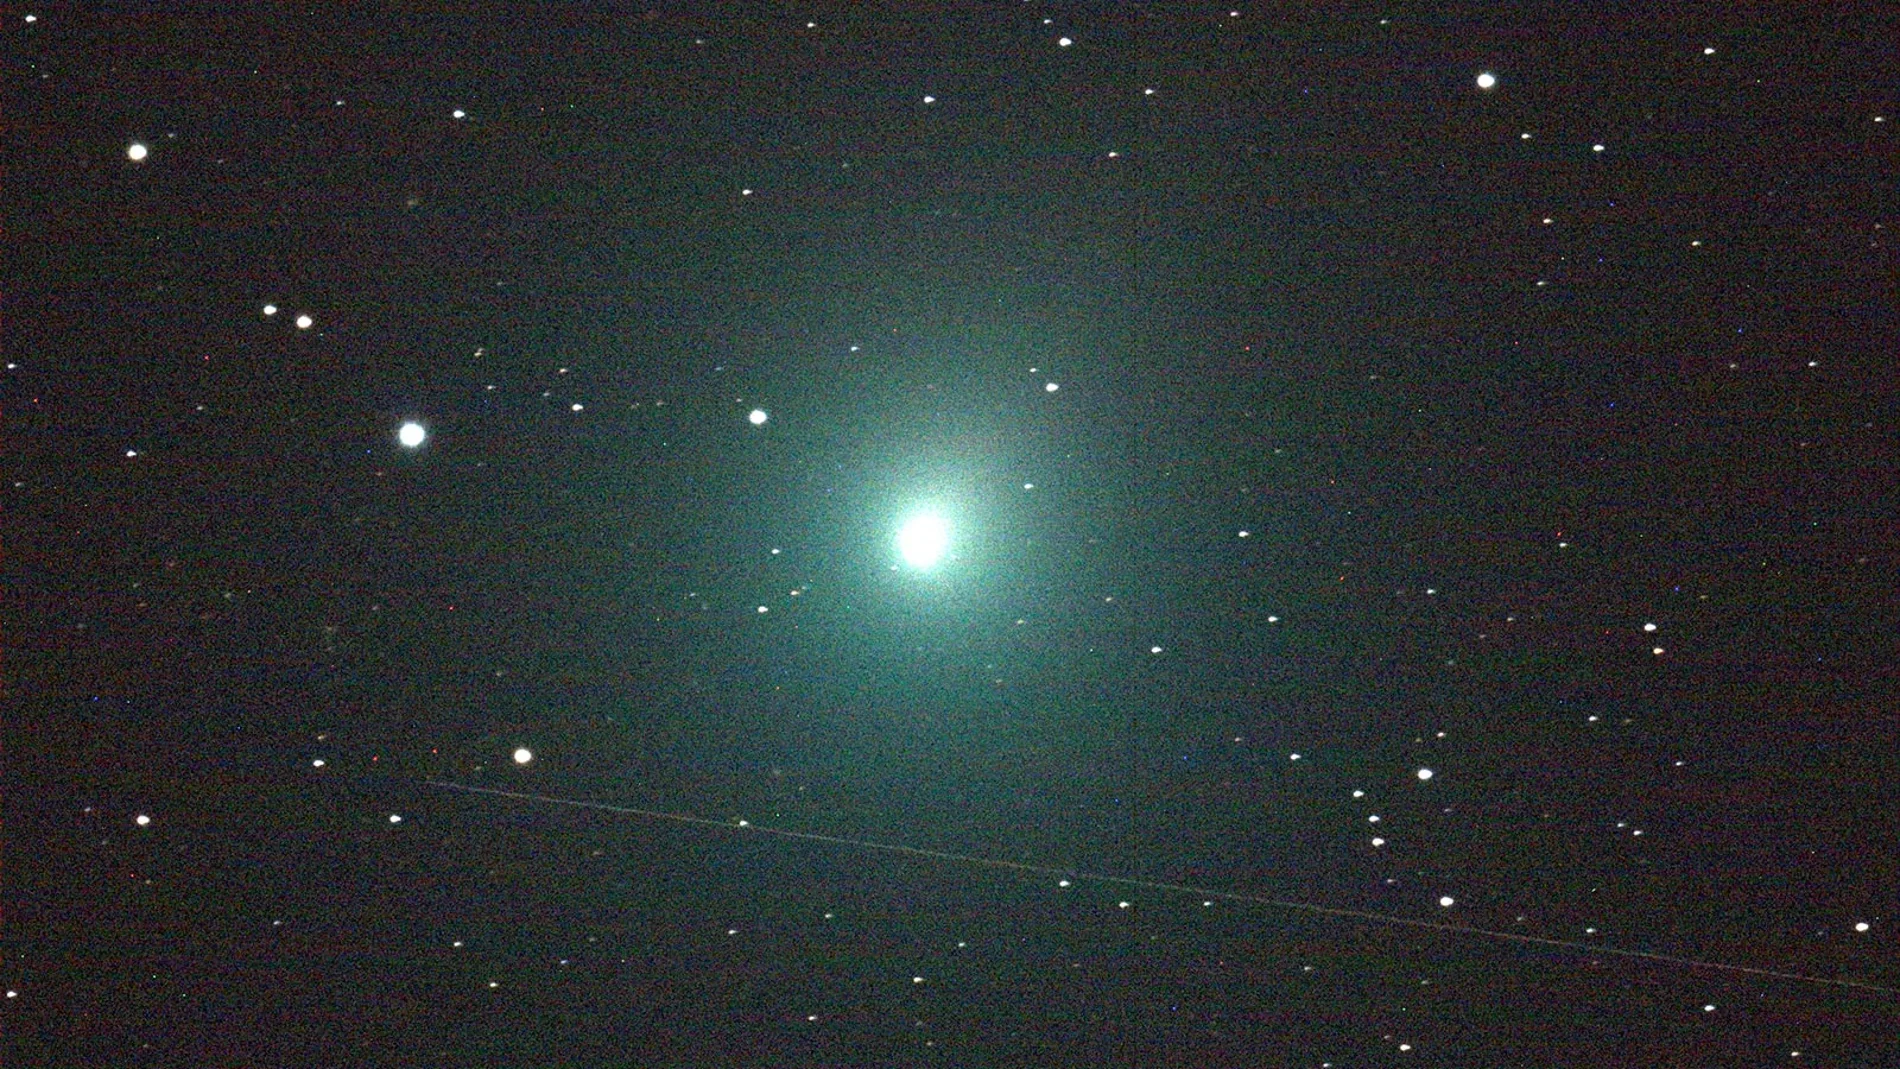 Esta noche se podrá ver el cometa. Habrá que hacerlo en un lugar sin contaminación lumínica y en un lugar donde el temporal de lluvia lo permita. En la imagen, el cometa Wirtanen